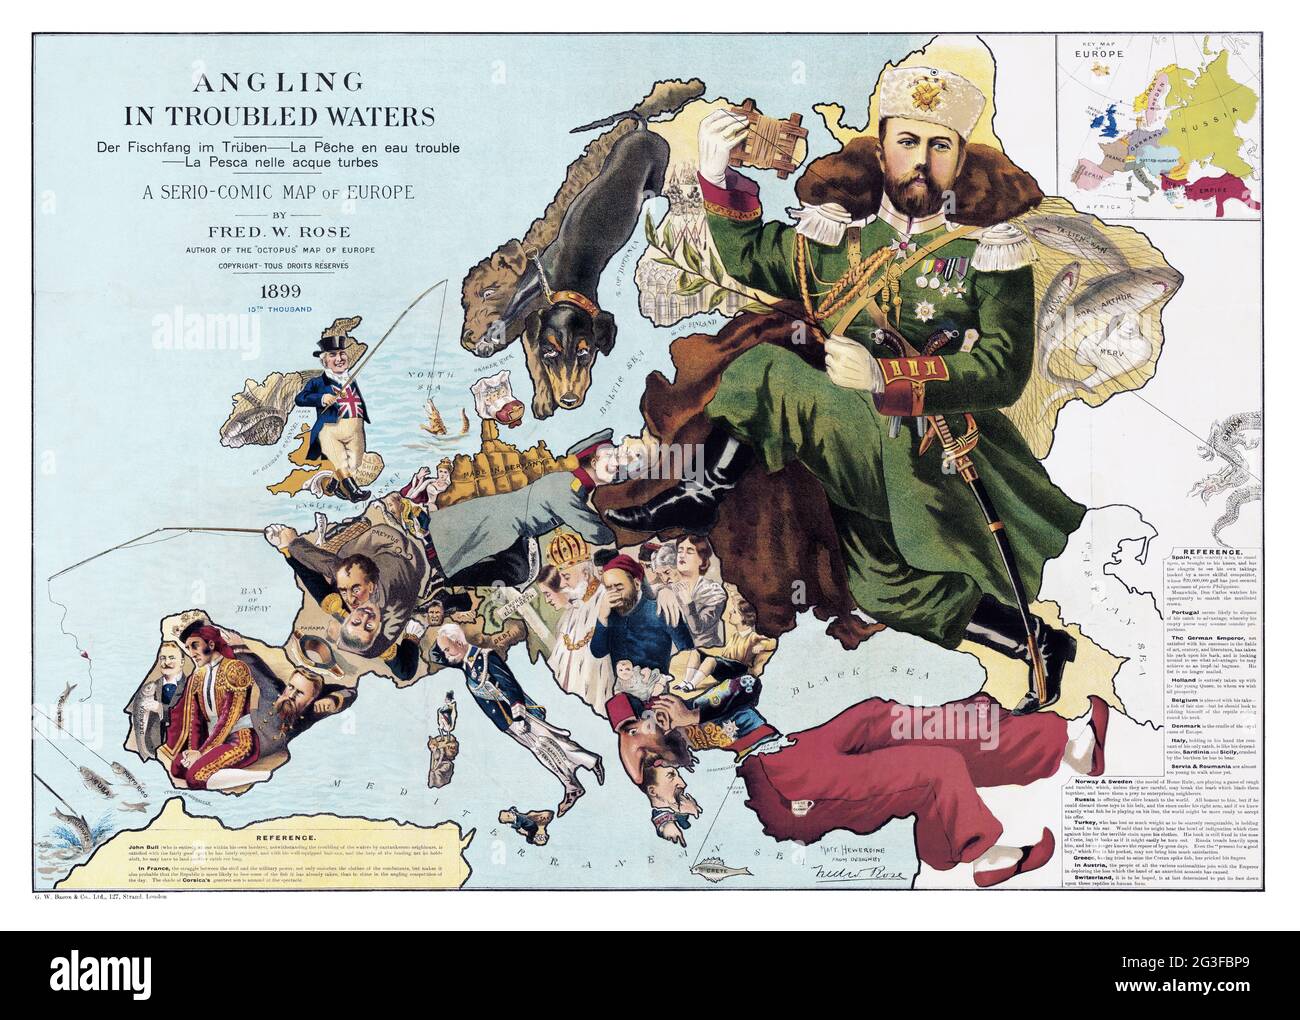 1889 Mappa satirica dell'Europa - Angling in acque tormentate - di Fred W. Rose Foto Stock